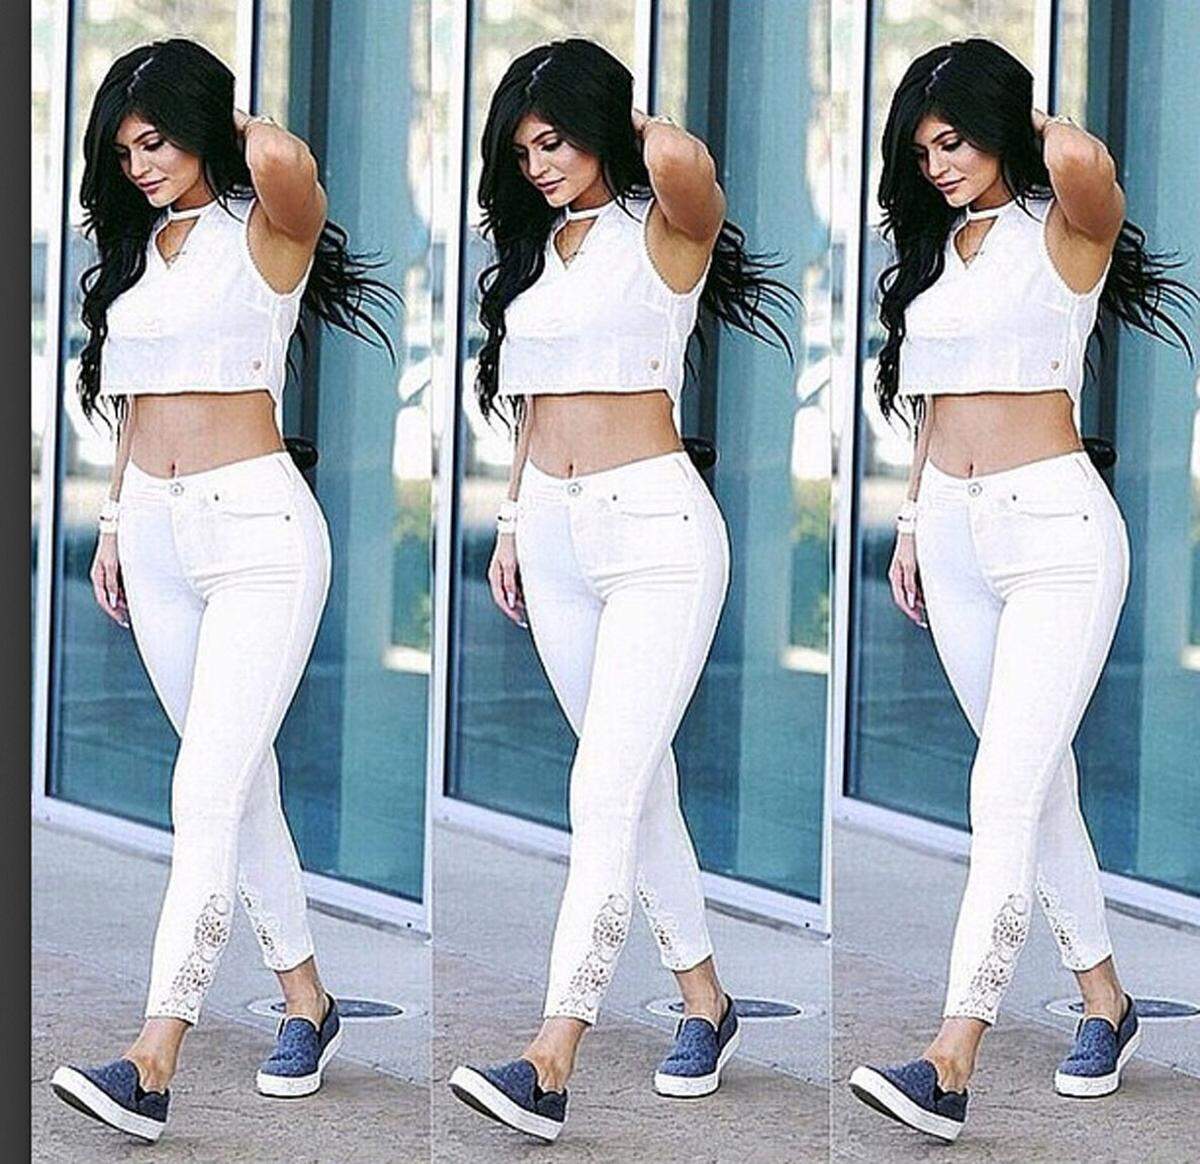 Cellulite sieht man beispielsweise bei weißen Hosen leicht durch, daher empfiehlt sich ein dickerer Jeansstoff, zudem sollte die Hose nicht allzu transparent sein. Kylie Jenner ganz in Weiß.